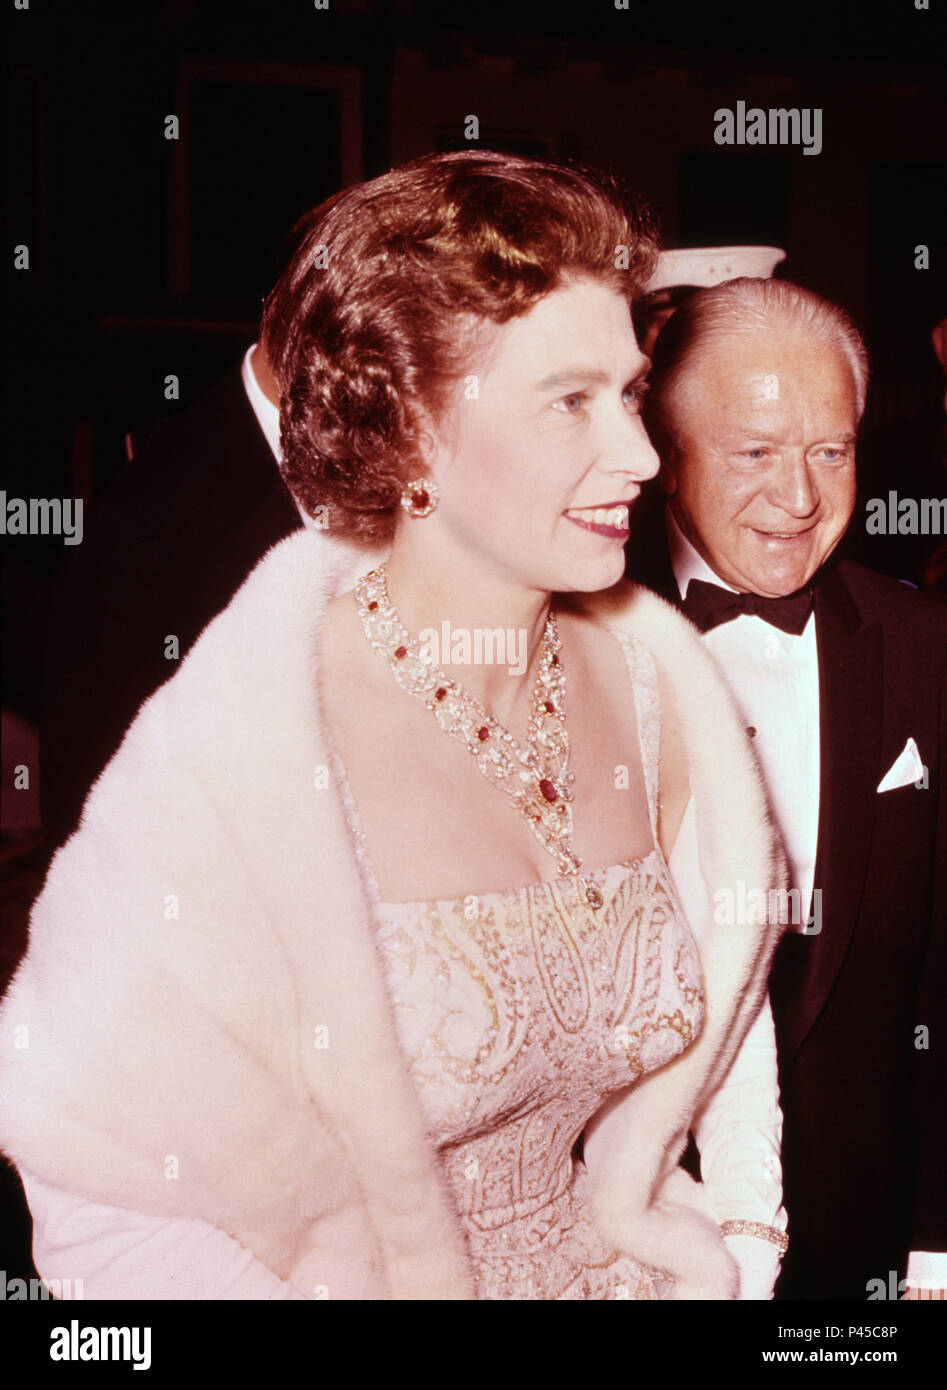 La reine Elizabeth II en arrivant à la résidence du haut-commissaire du Canada à Londres pour un dîner d'adieu avant son départ deux jours plus tard pour une tournée canadienne. Banque D'Images